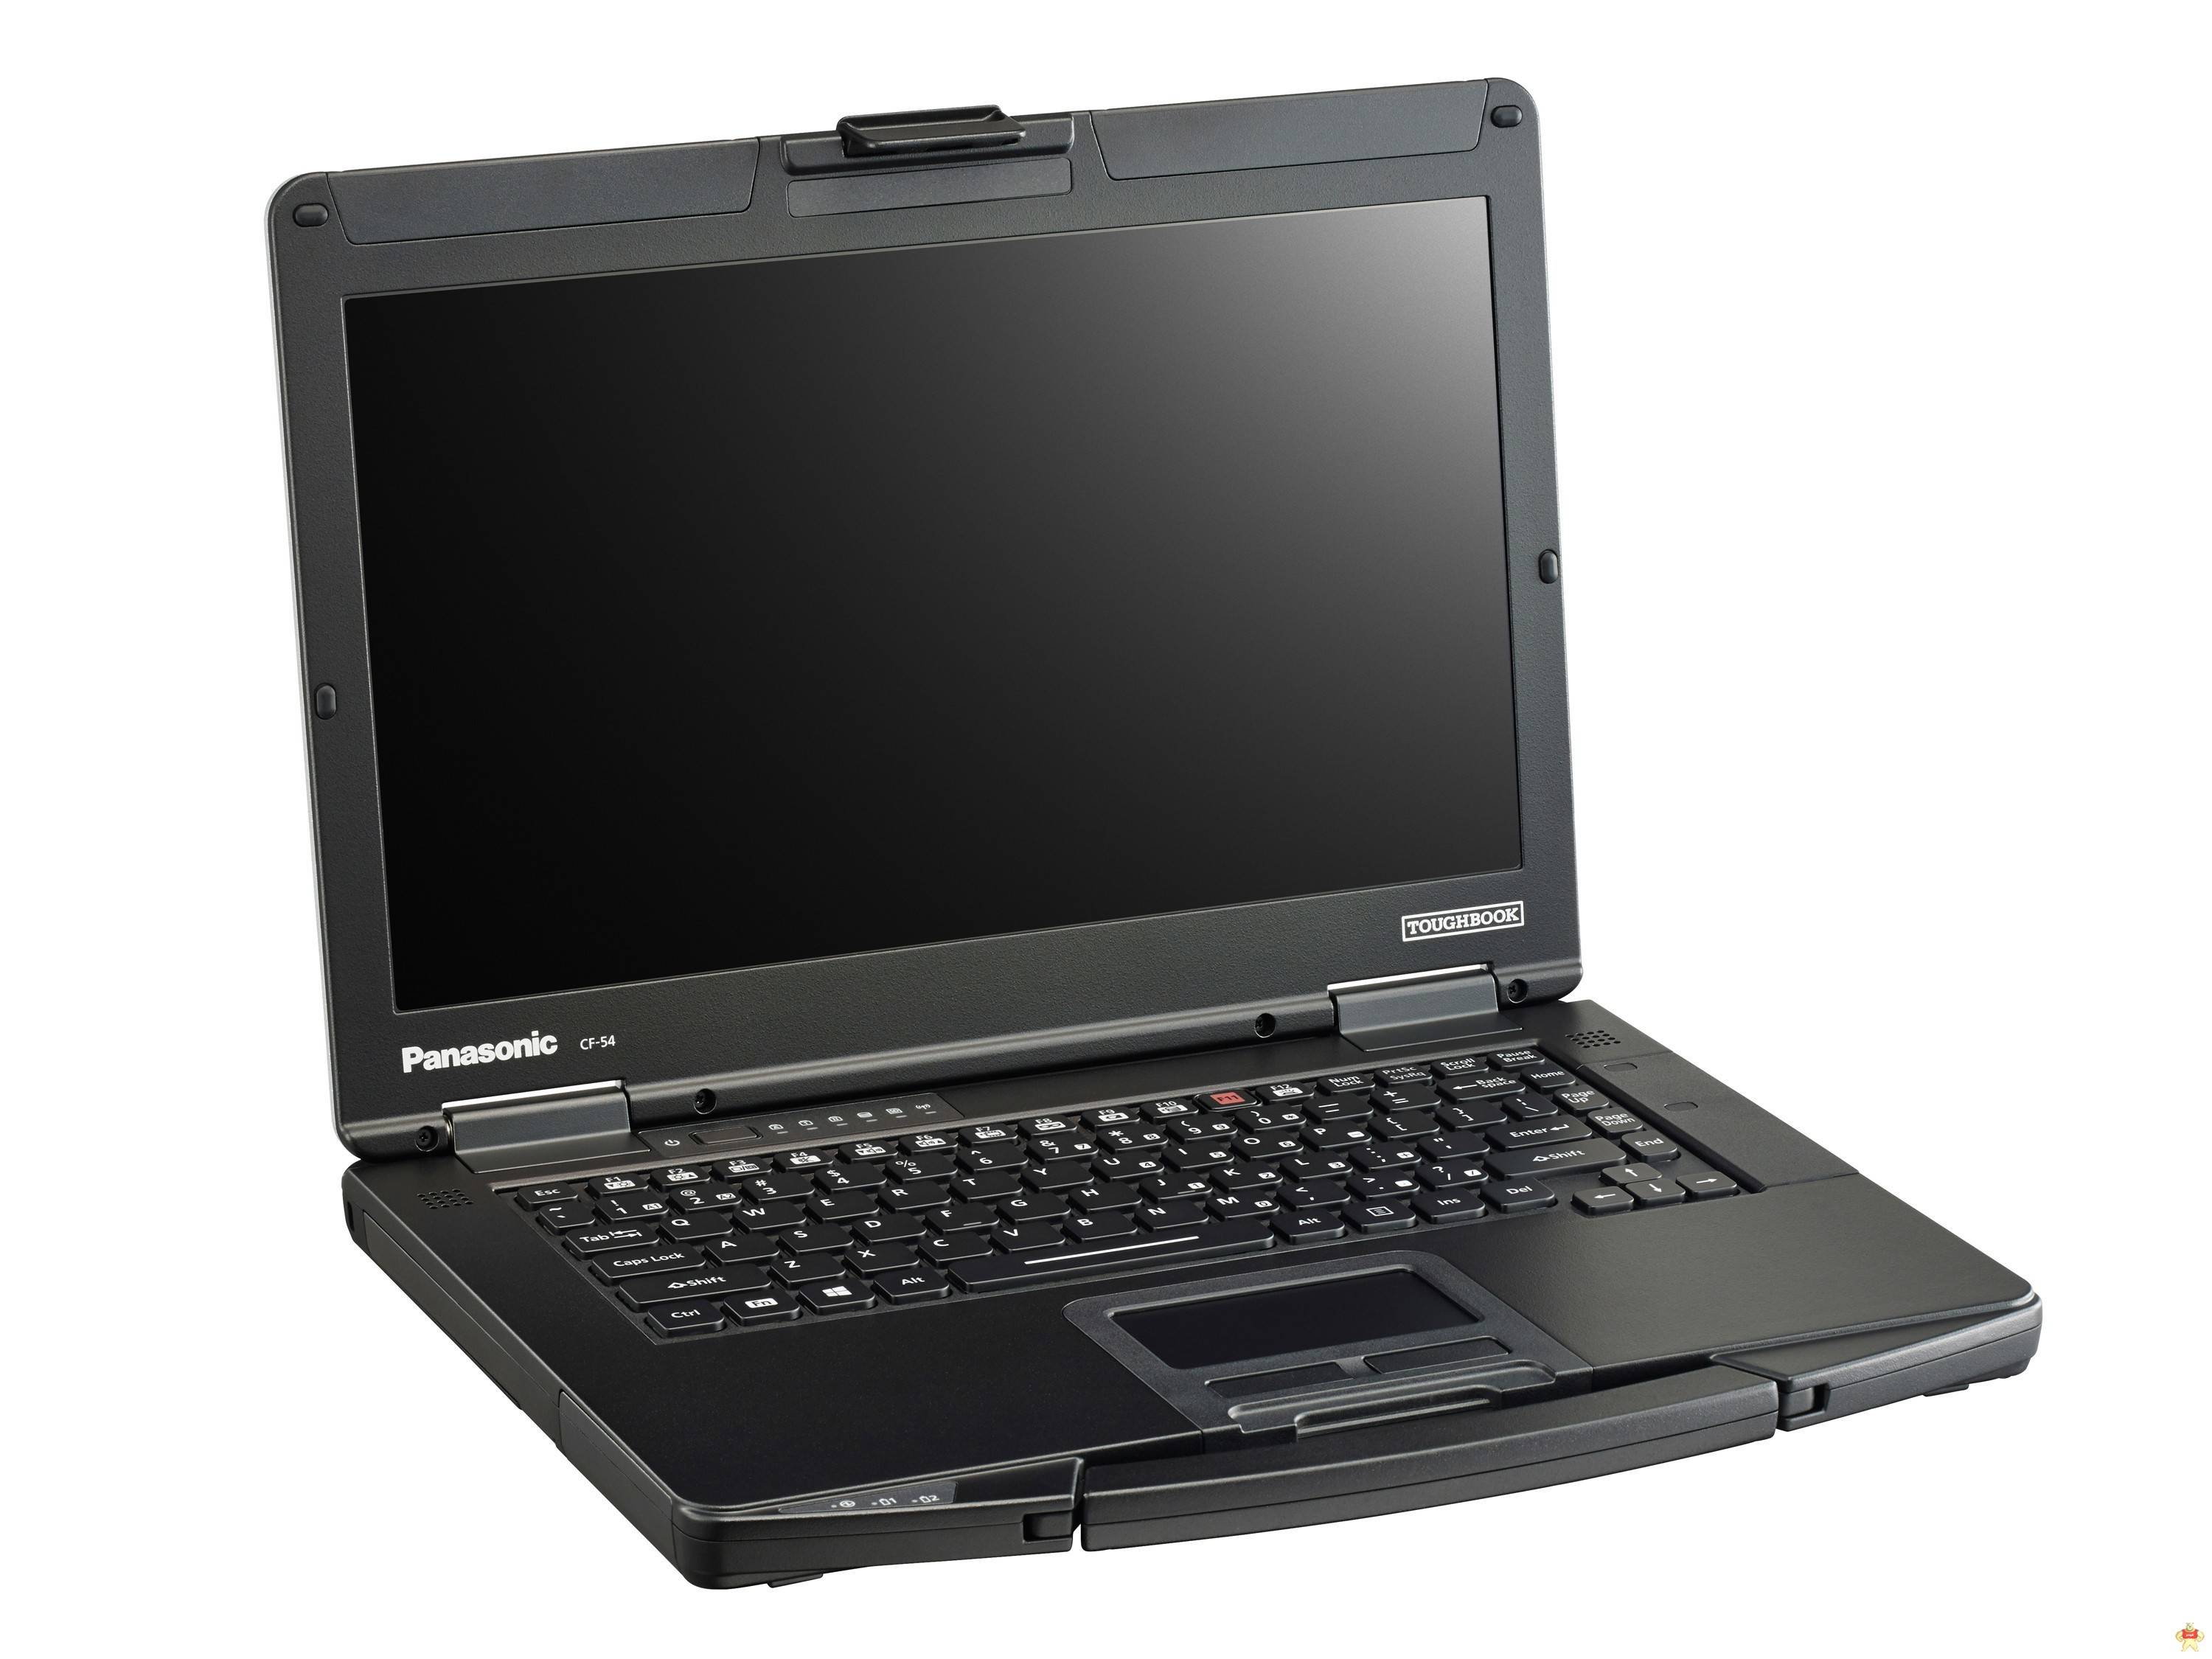 Panasonic便携CF-54半坚固型笔记本电脑 CF-54,半坚固型笔记本电脑,便携CF-54,加固笔记本,便携笔记本